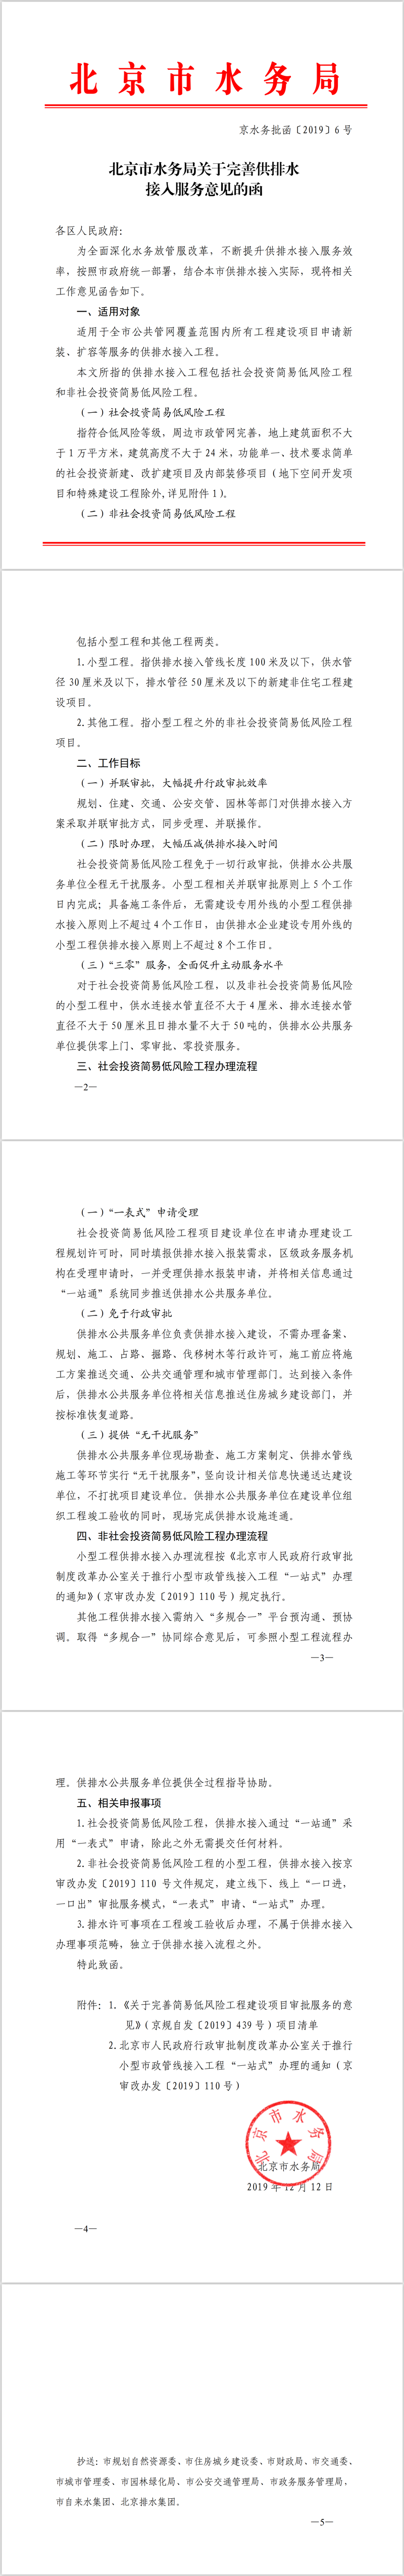 北京市水務局關於完善供排水接入服務意見的函